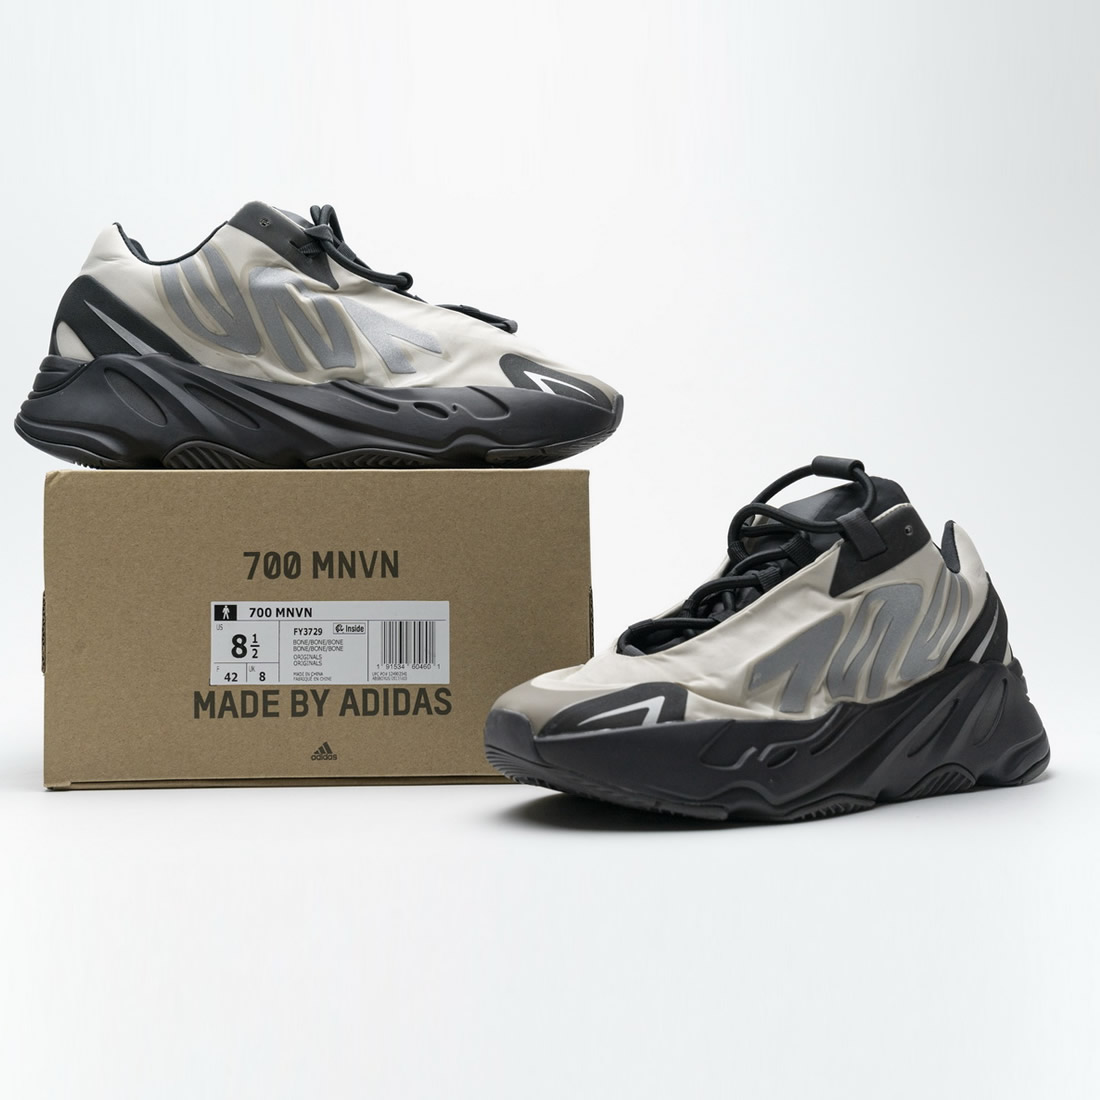 Adidas Yeezy Boost 700 Mnvn Bone Fy3729 New Release Date For Sale 6 - kickbulk.co